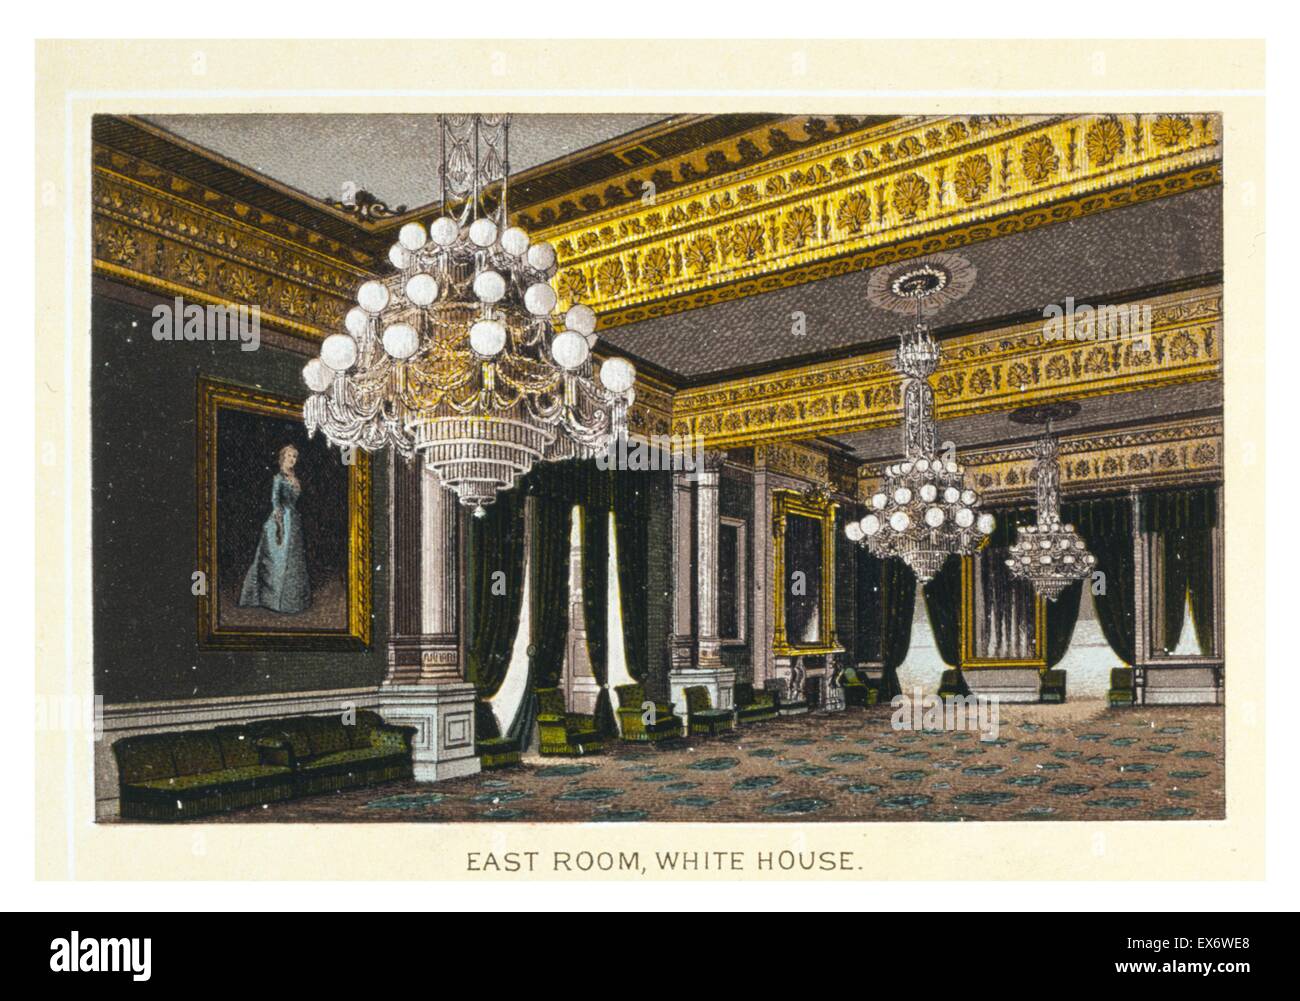 Photolithograph raffigurante la Sala Est alla Casa Bianca di Washington D.C. Datata 1889 Foto Stock